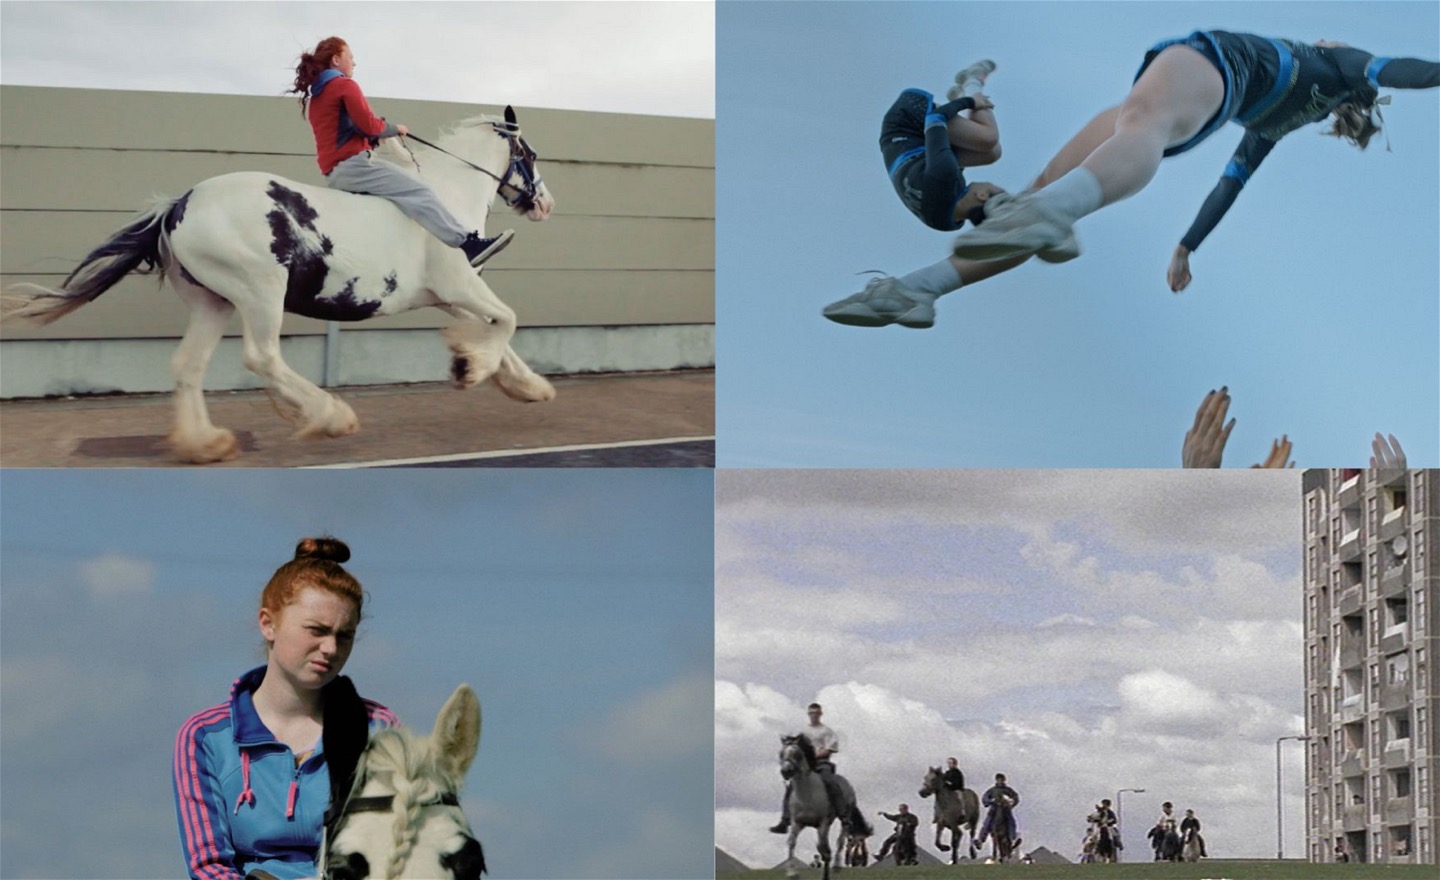 Fotokollage: tjej på häst, cheerleaders i ett kast, tjej på hästrygg, personer som rider på hästar på en gräsmatta